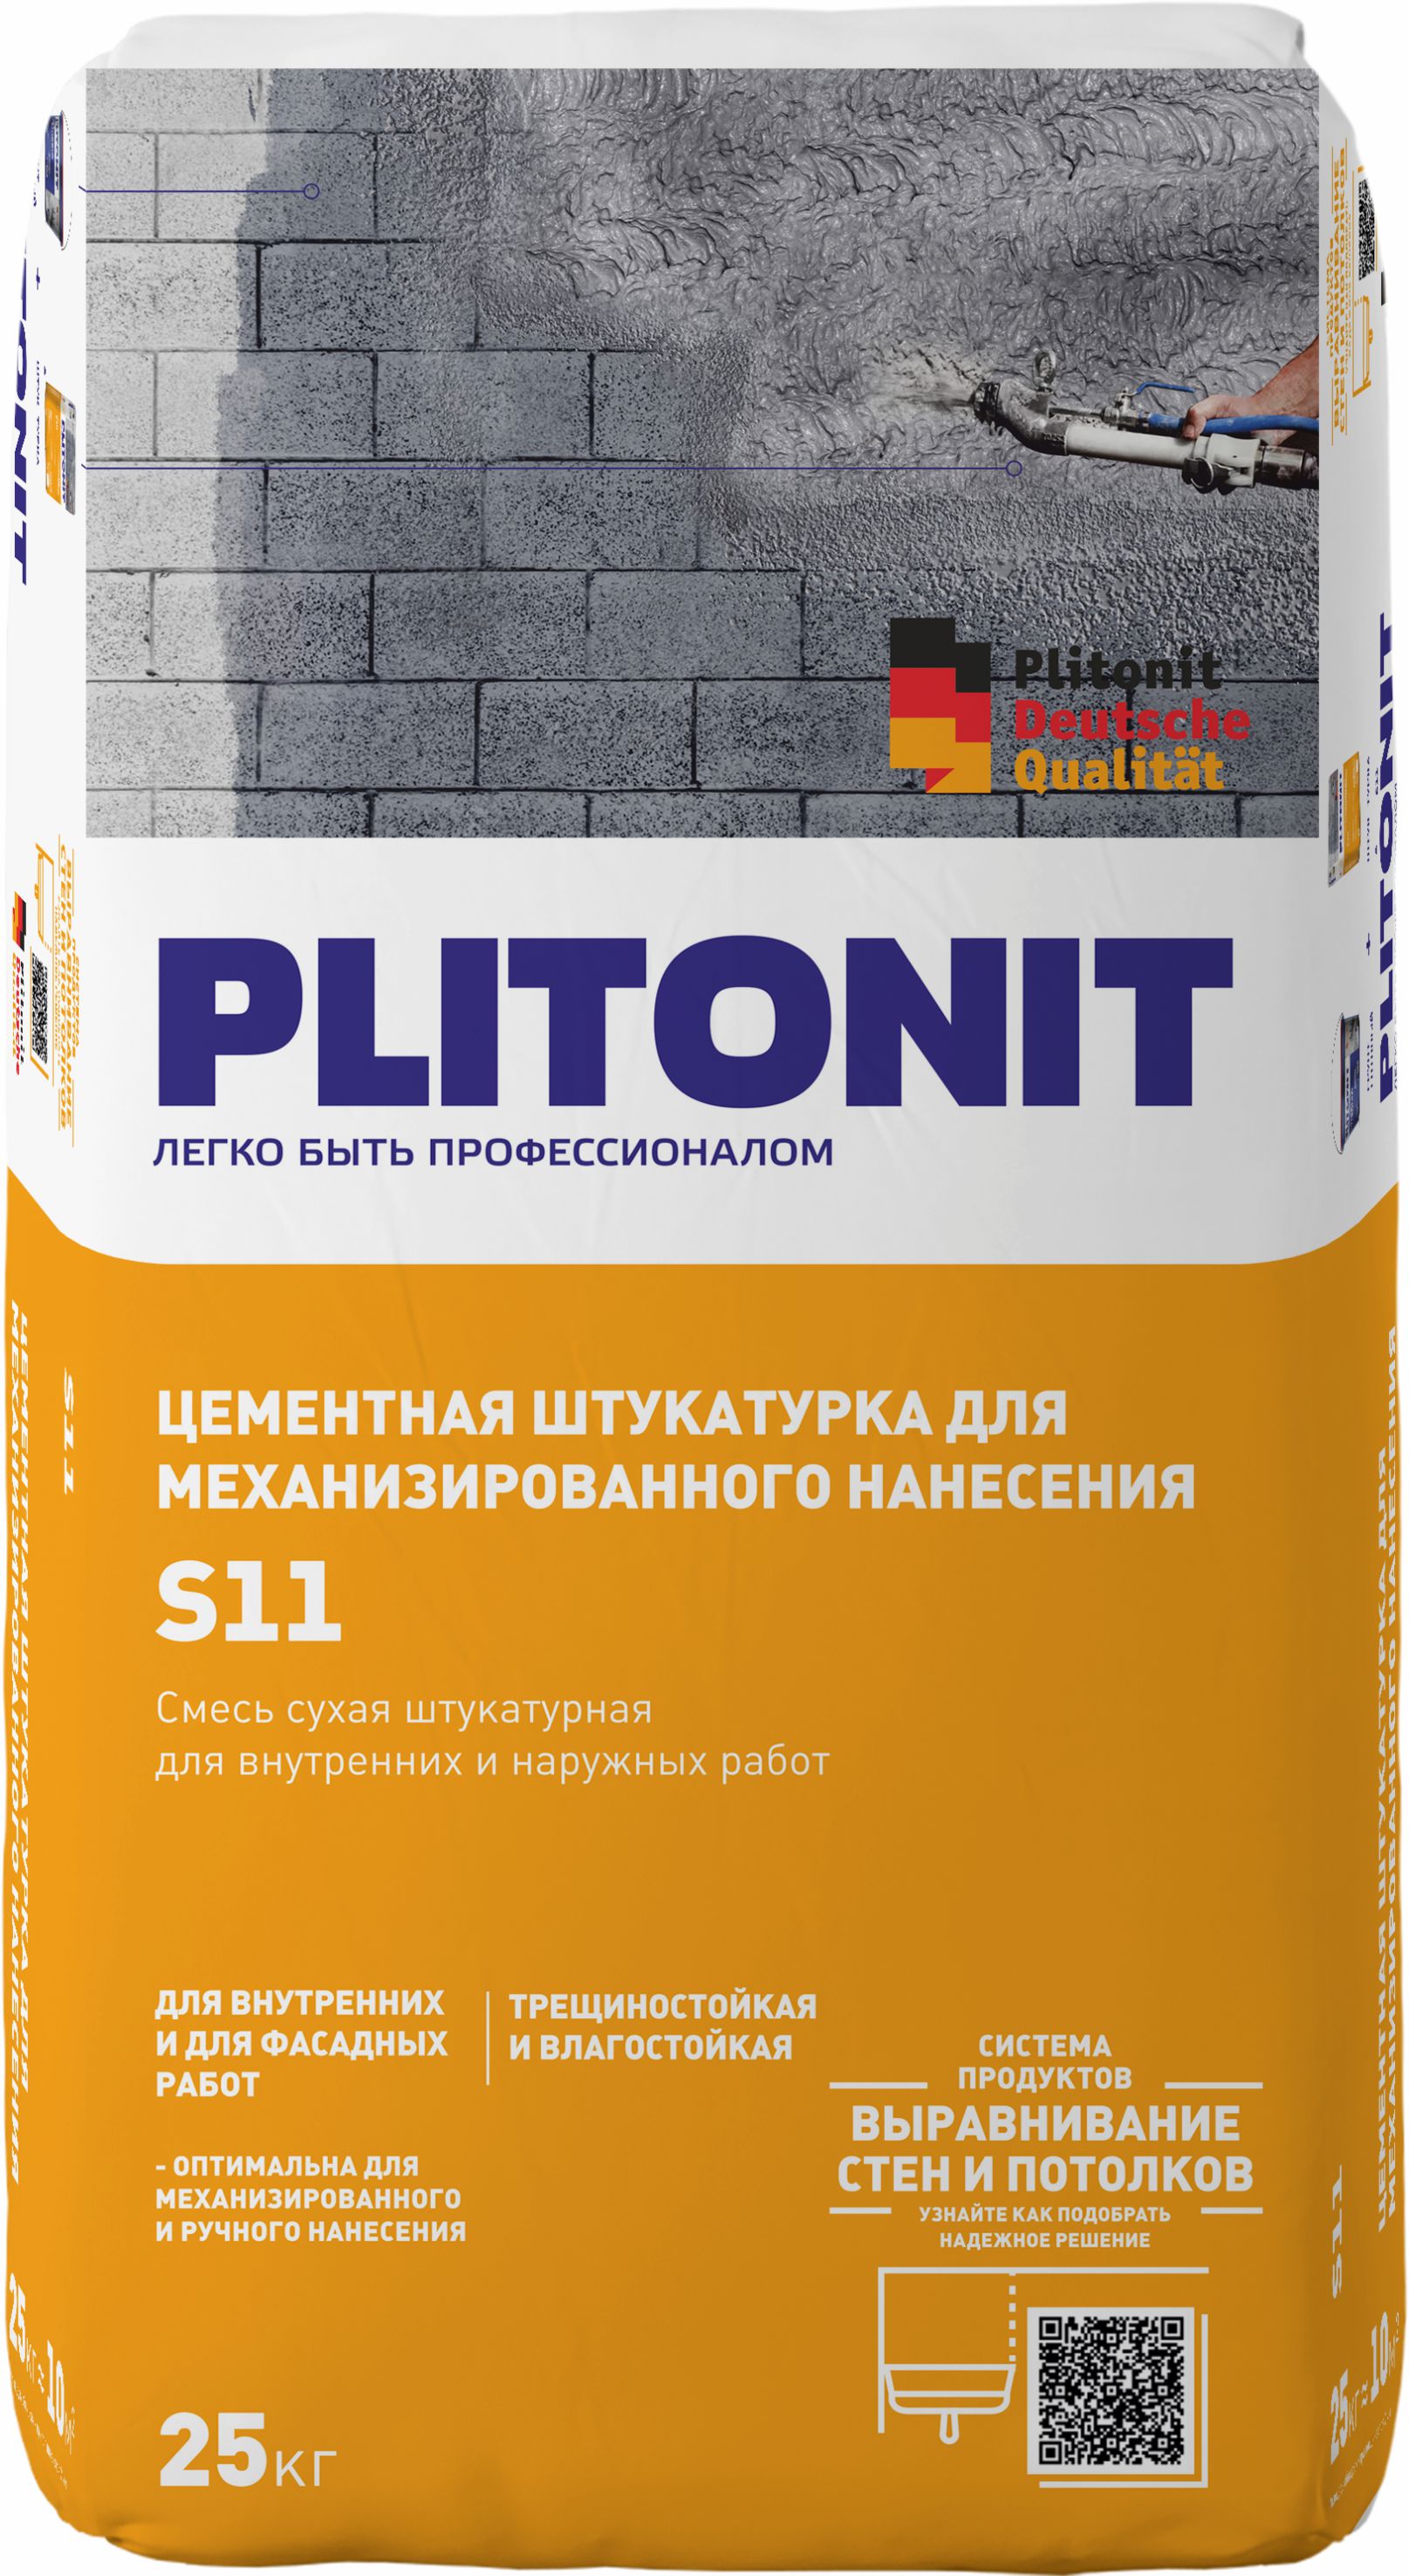 PLITONIT S11 цементная штукатурка для механизированного и ручного нанесения  25 кг  (48шт/подд.)